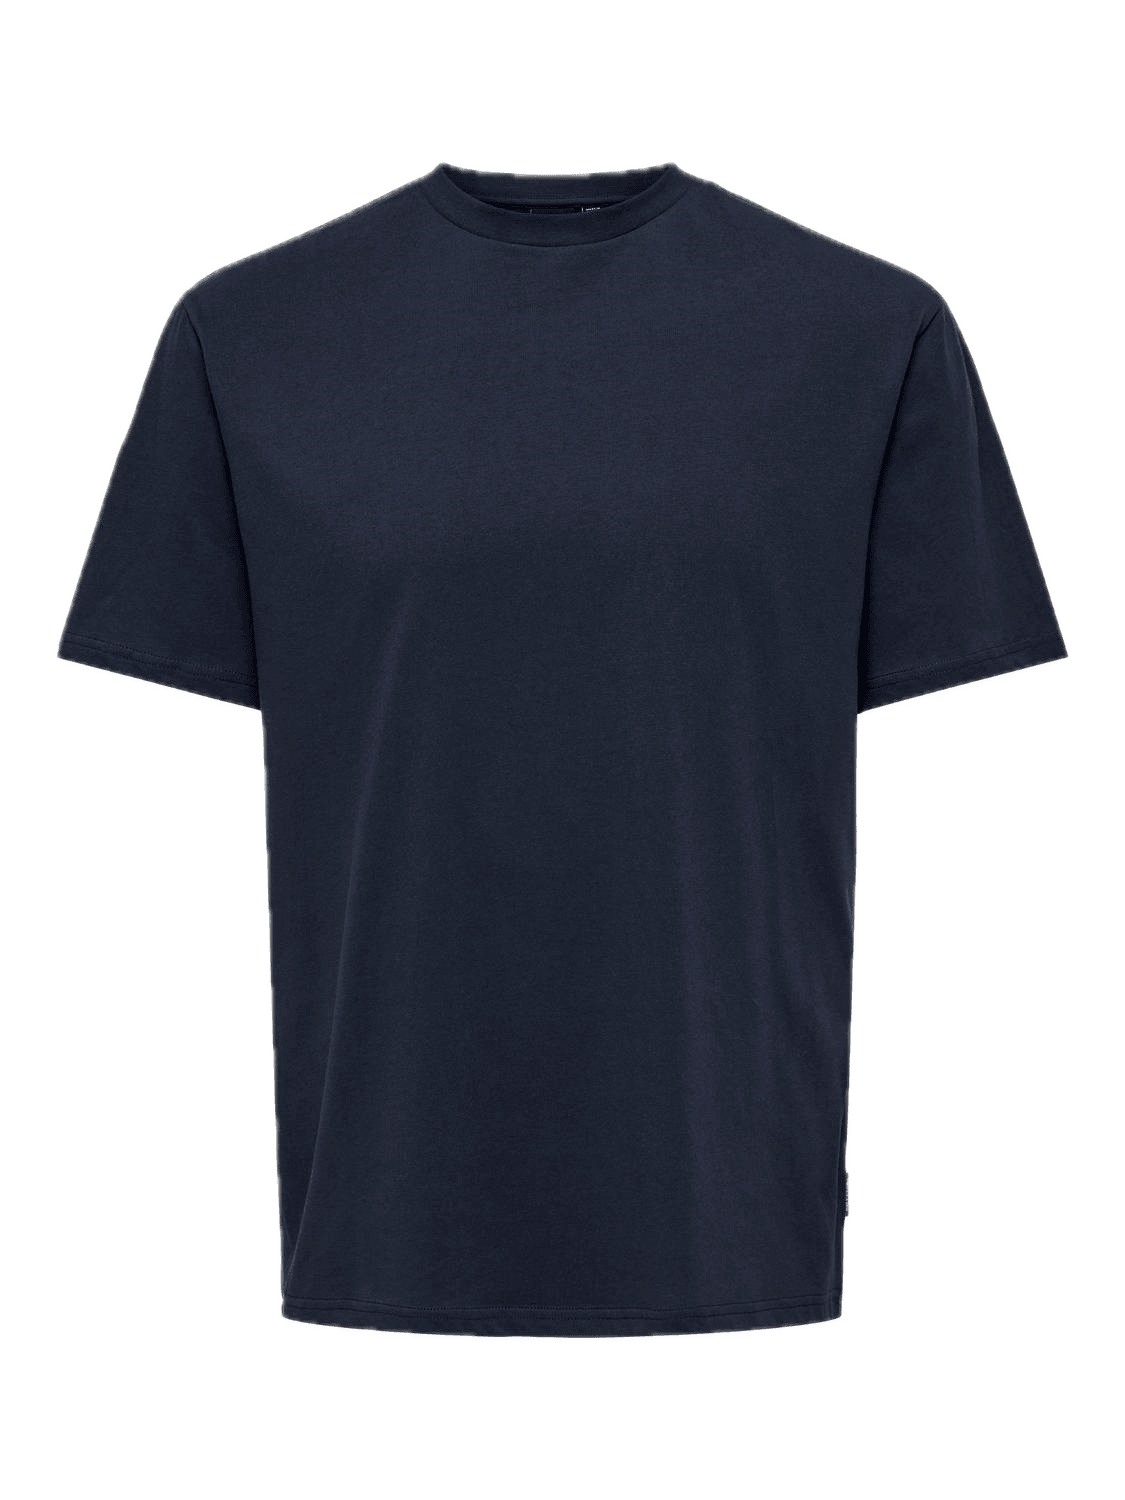 Camiseta Only & Sons Motob Life Dark Navy - ECRU